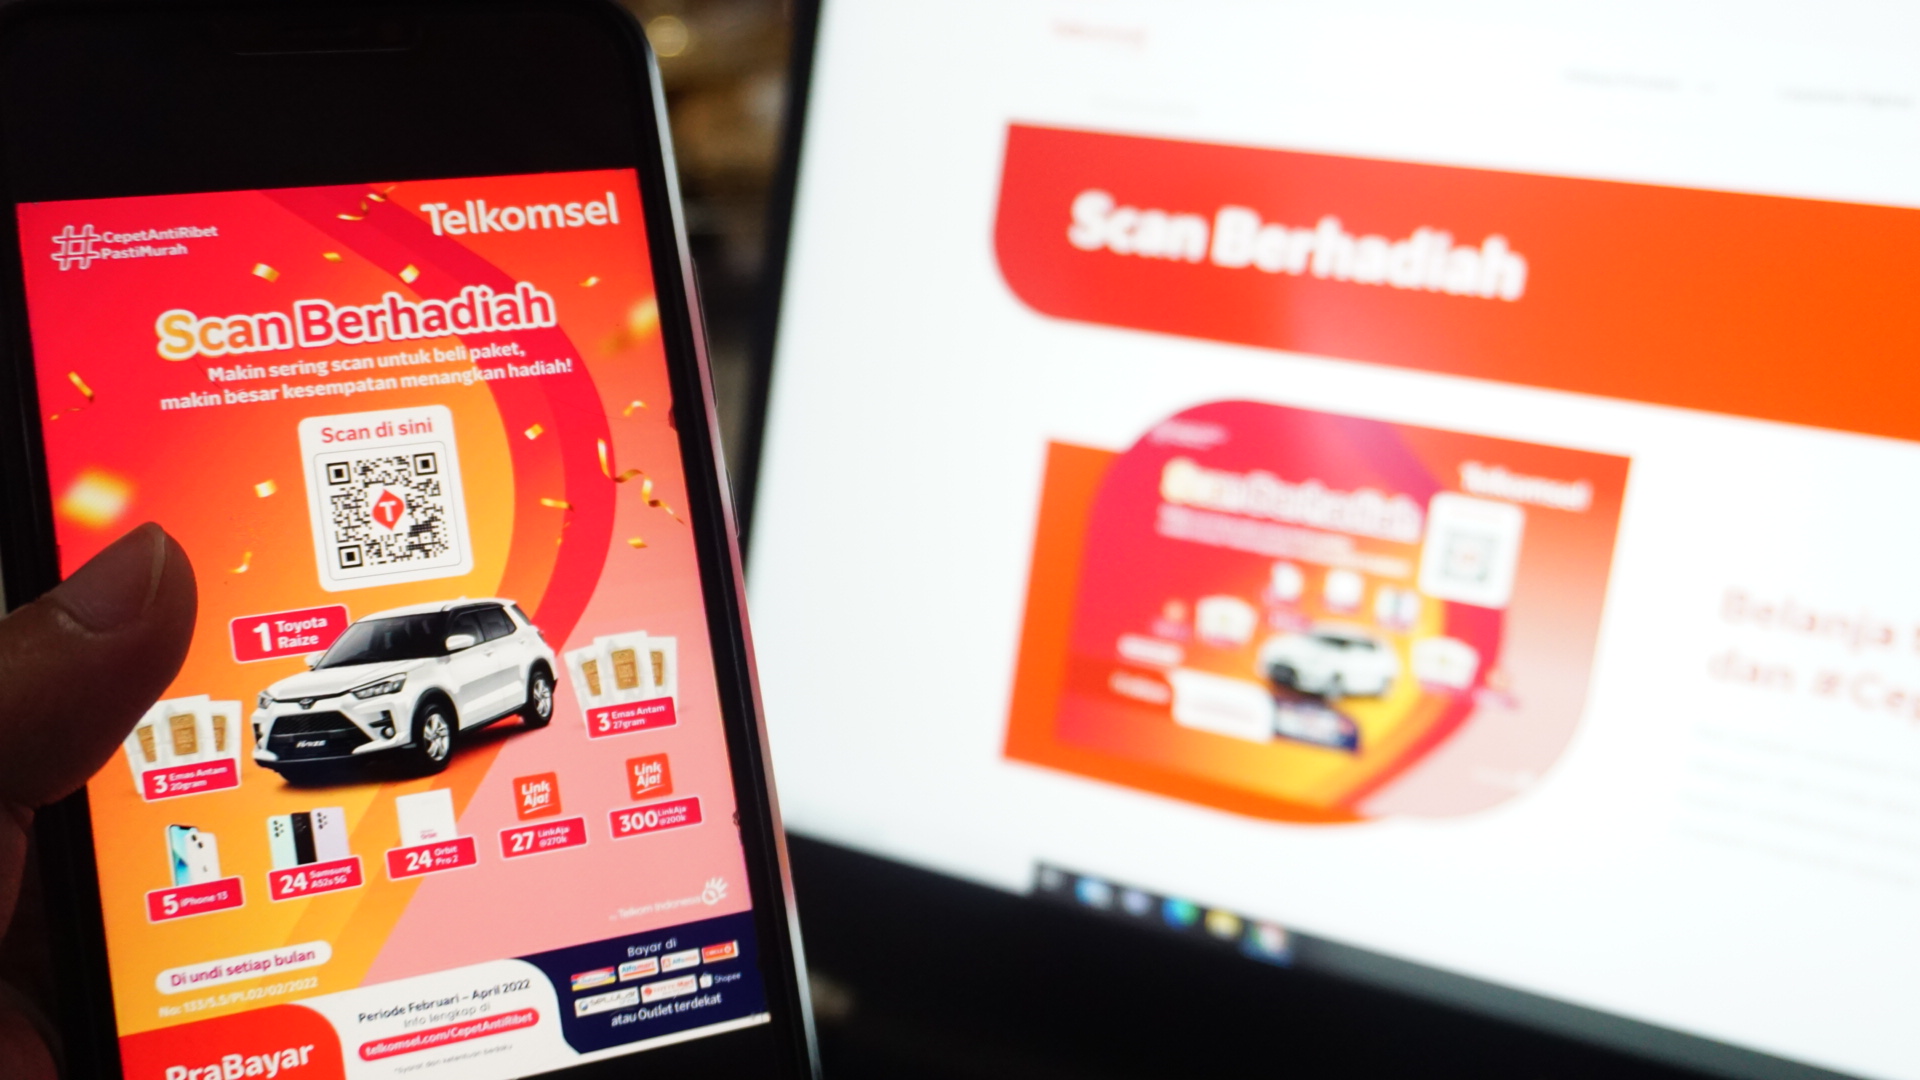 Telkomsel menghadirkan program Scan Berhadiah #CepatAntiRibet bagi seluruh pelanggan prabayar untuk melengkapi pengalaman kemudahan bertransaksi via Omni Channel. (Telkomsel/Halonusa).